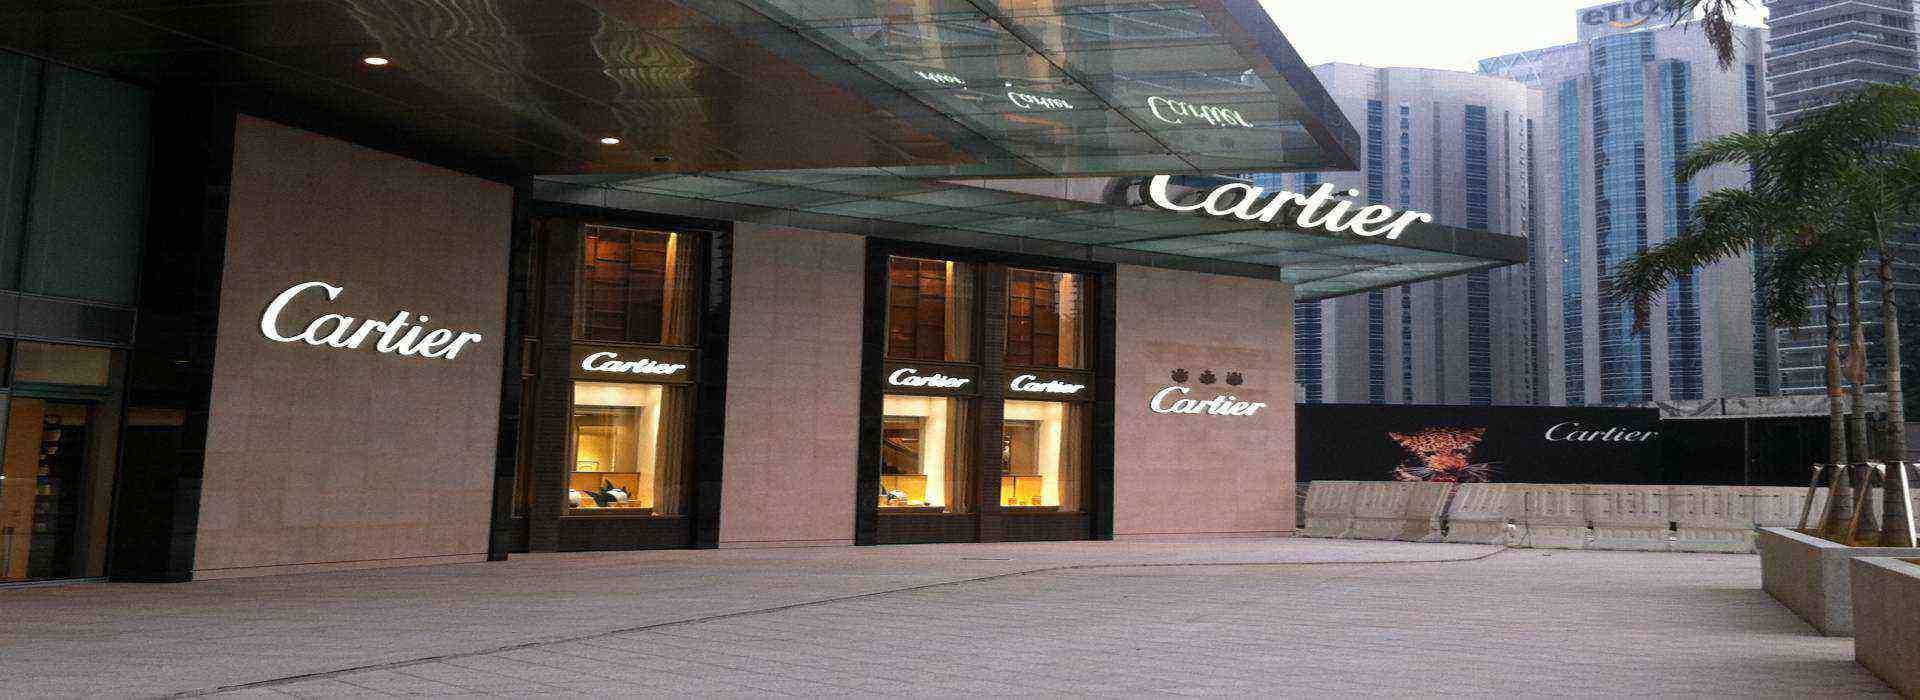 cartier service centre singapore address